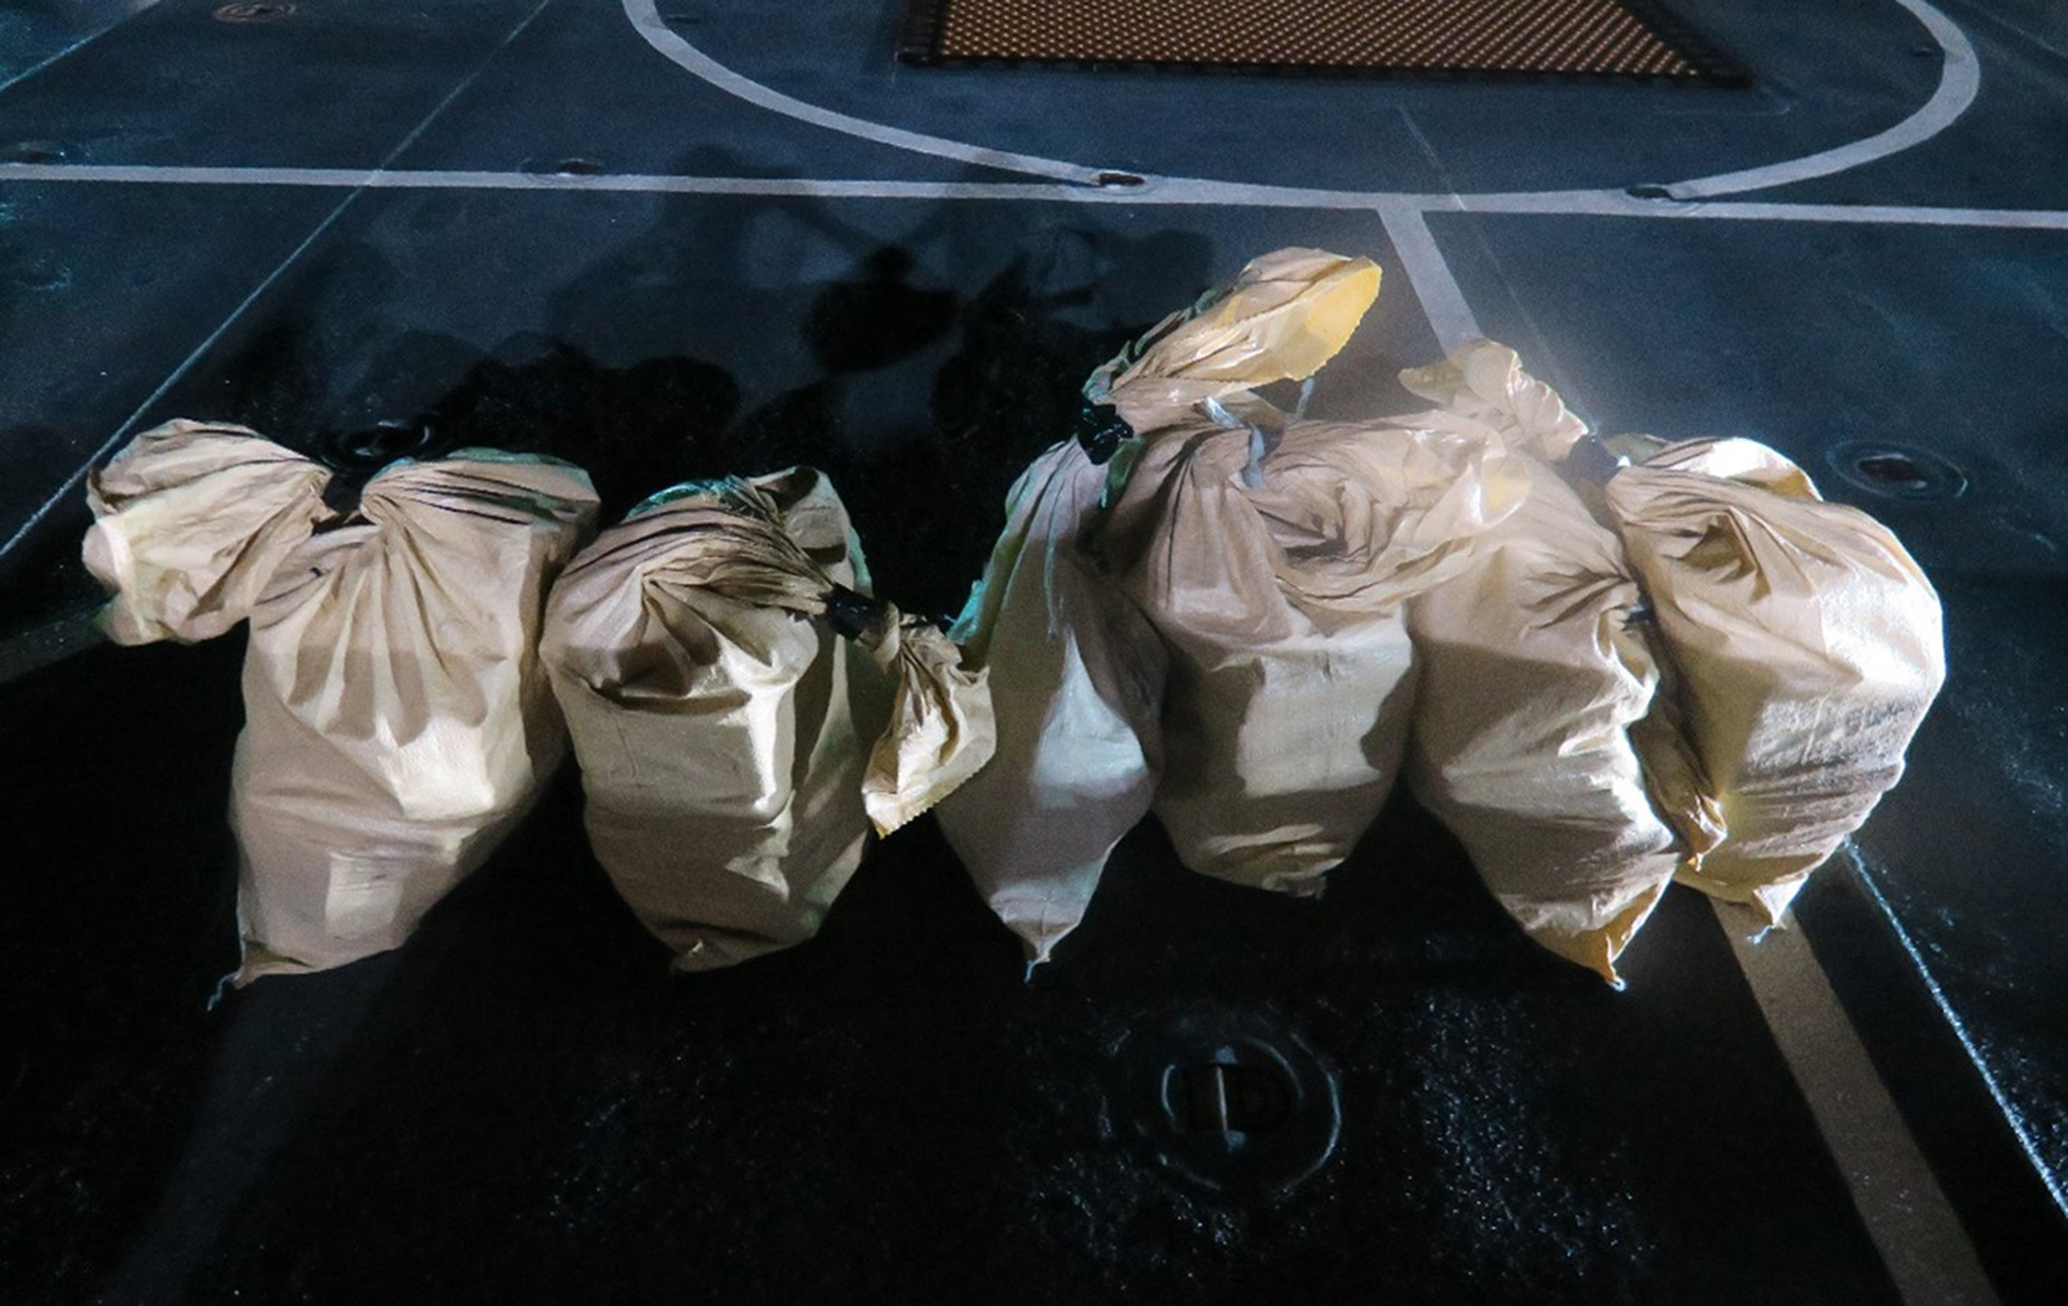 Das Bild zeigt die bei den Einsätzen in der Karibik beschlagnahmten Drogen